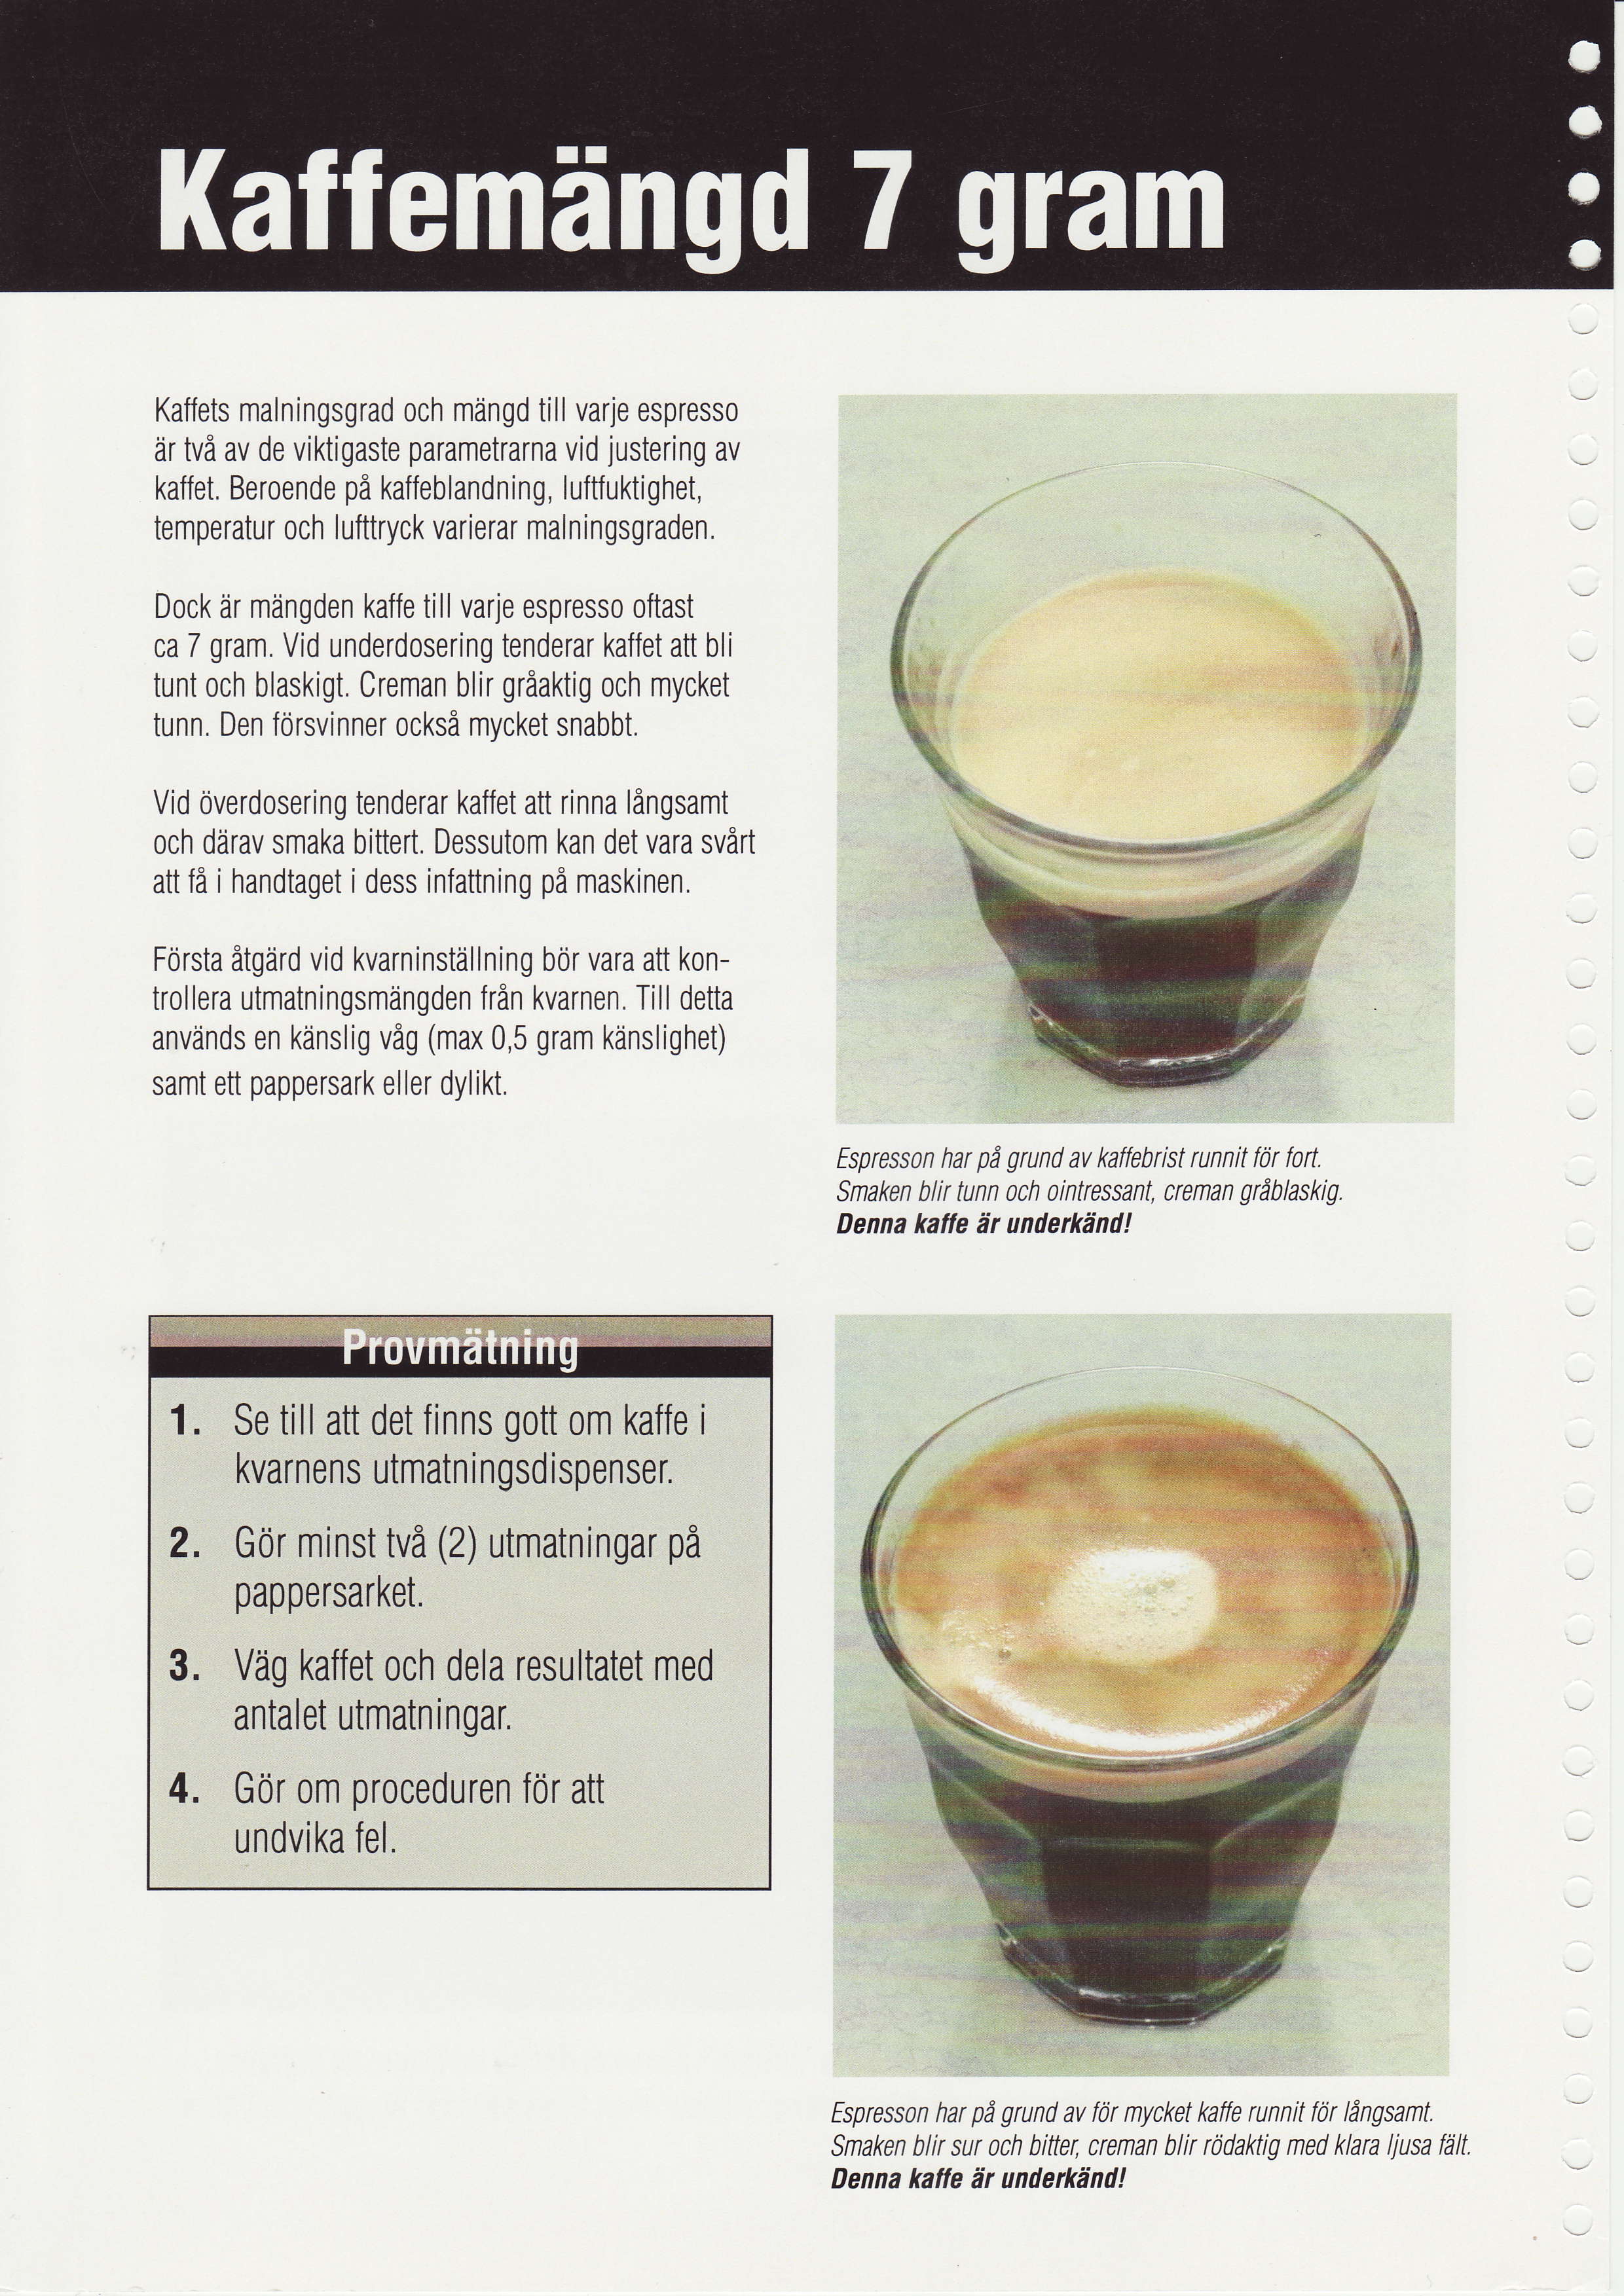 Kaffets malningsgrad och mlingd till varj espress0 lir tvi av de viktigaste parametrarna vid justering av kaffet.